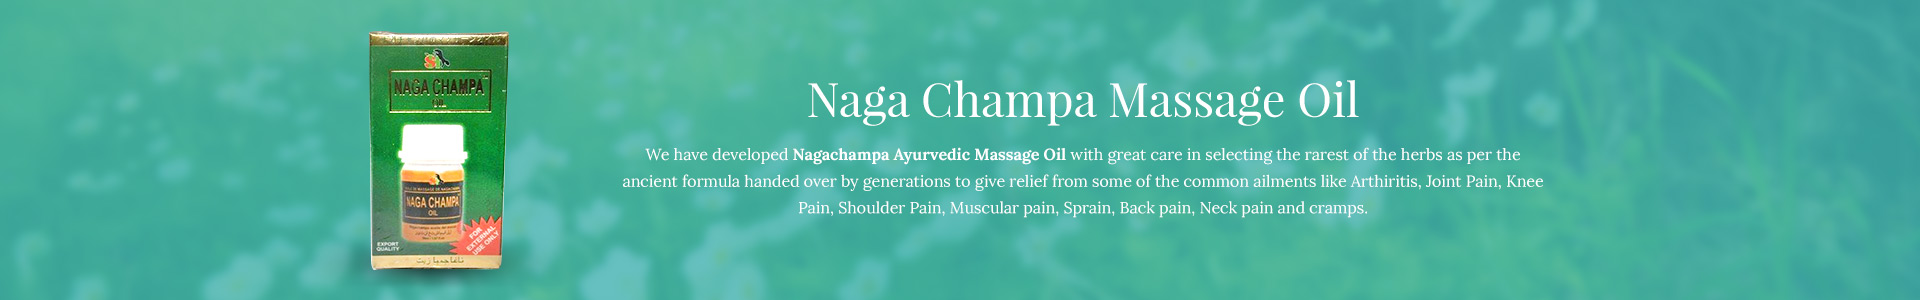 naga-champa-massage-oil